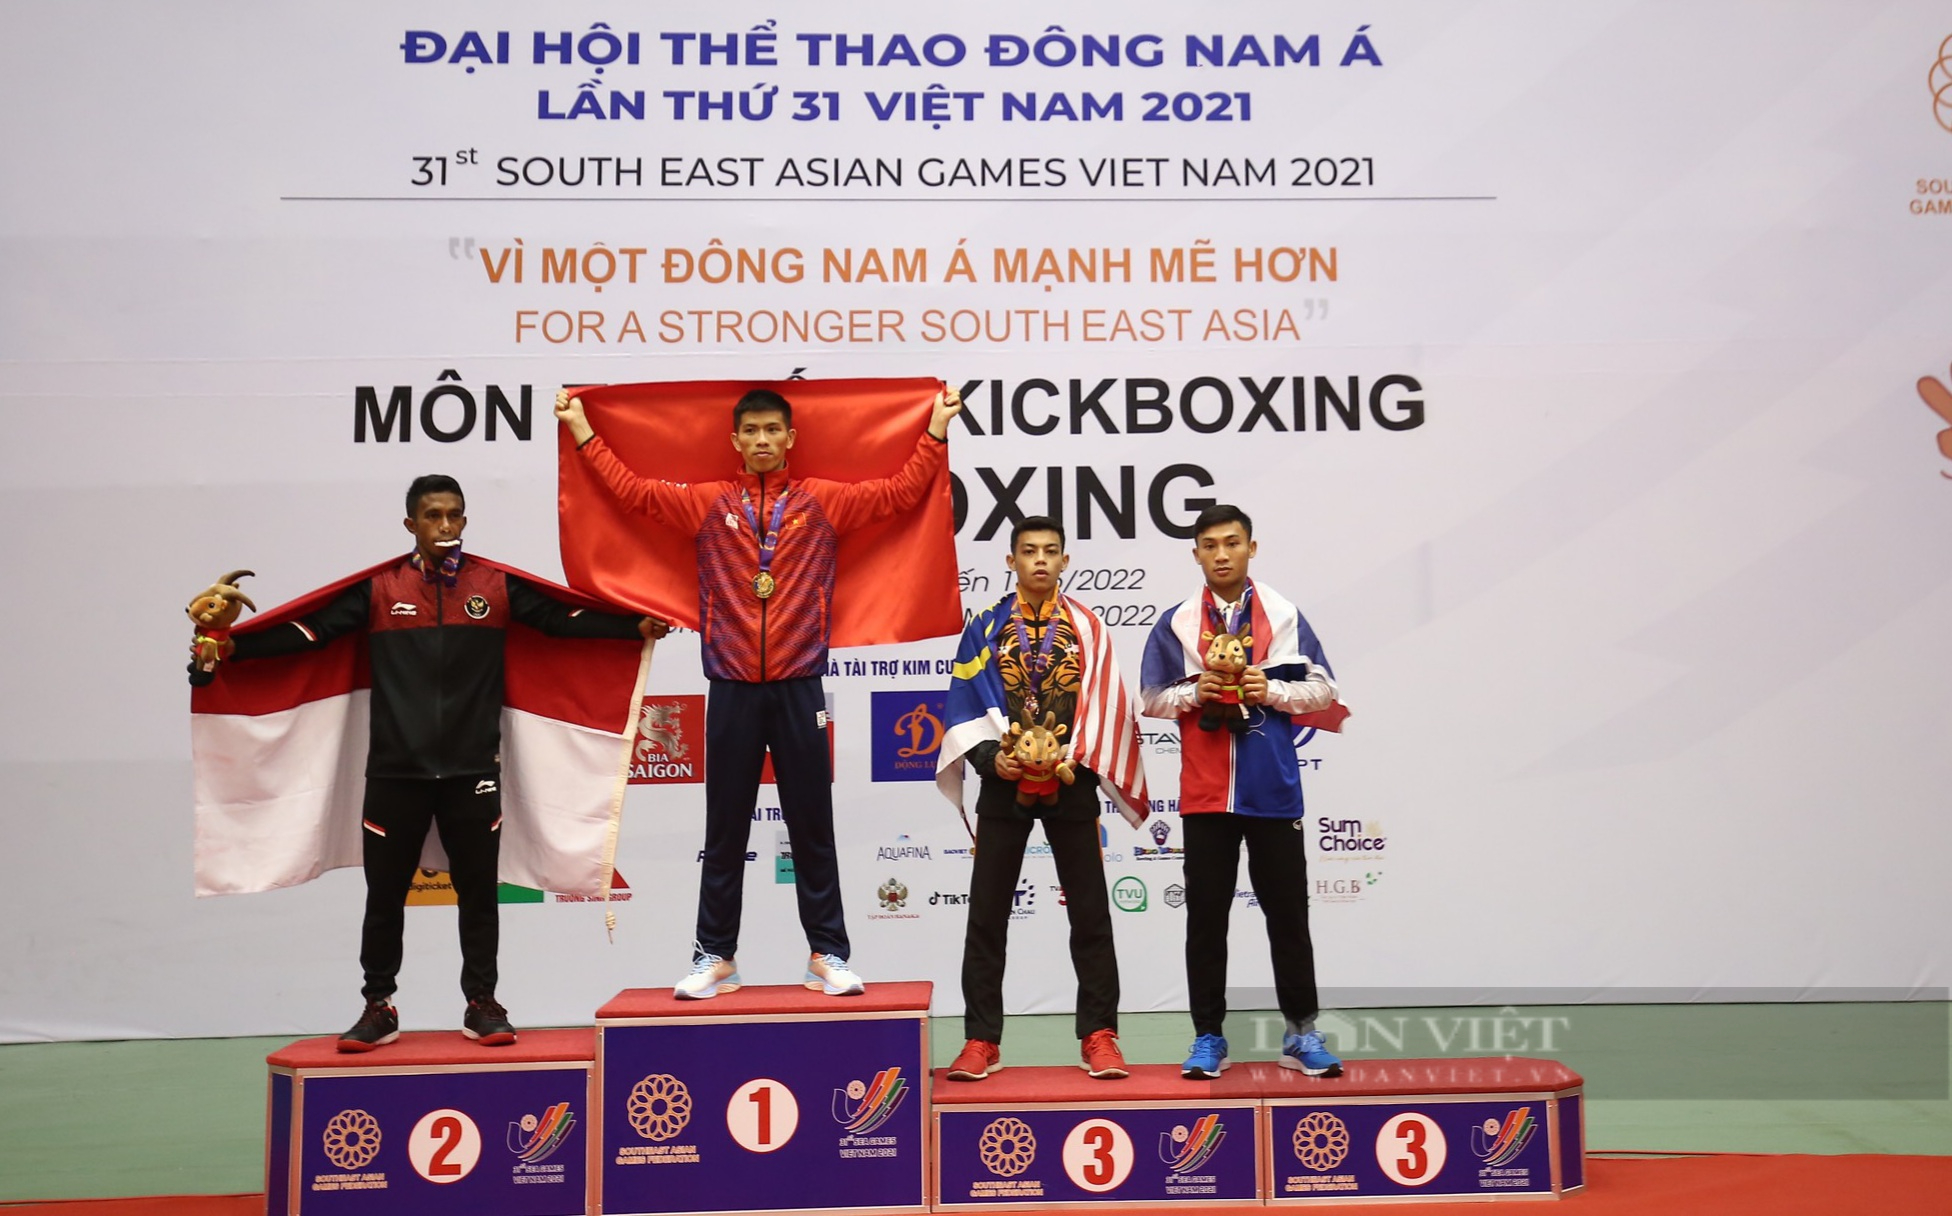 Clip: Huỳnh Anh Tuấn nói gì sau khi tiếp tục bảo vệ chức vô địch Kickboxing tại SEA games 31 - Ảnh 5.